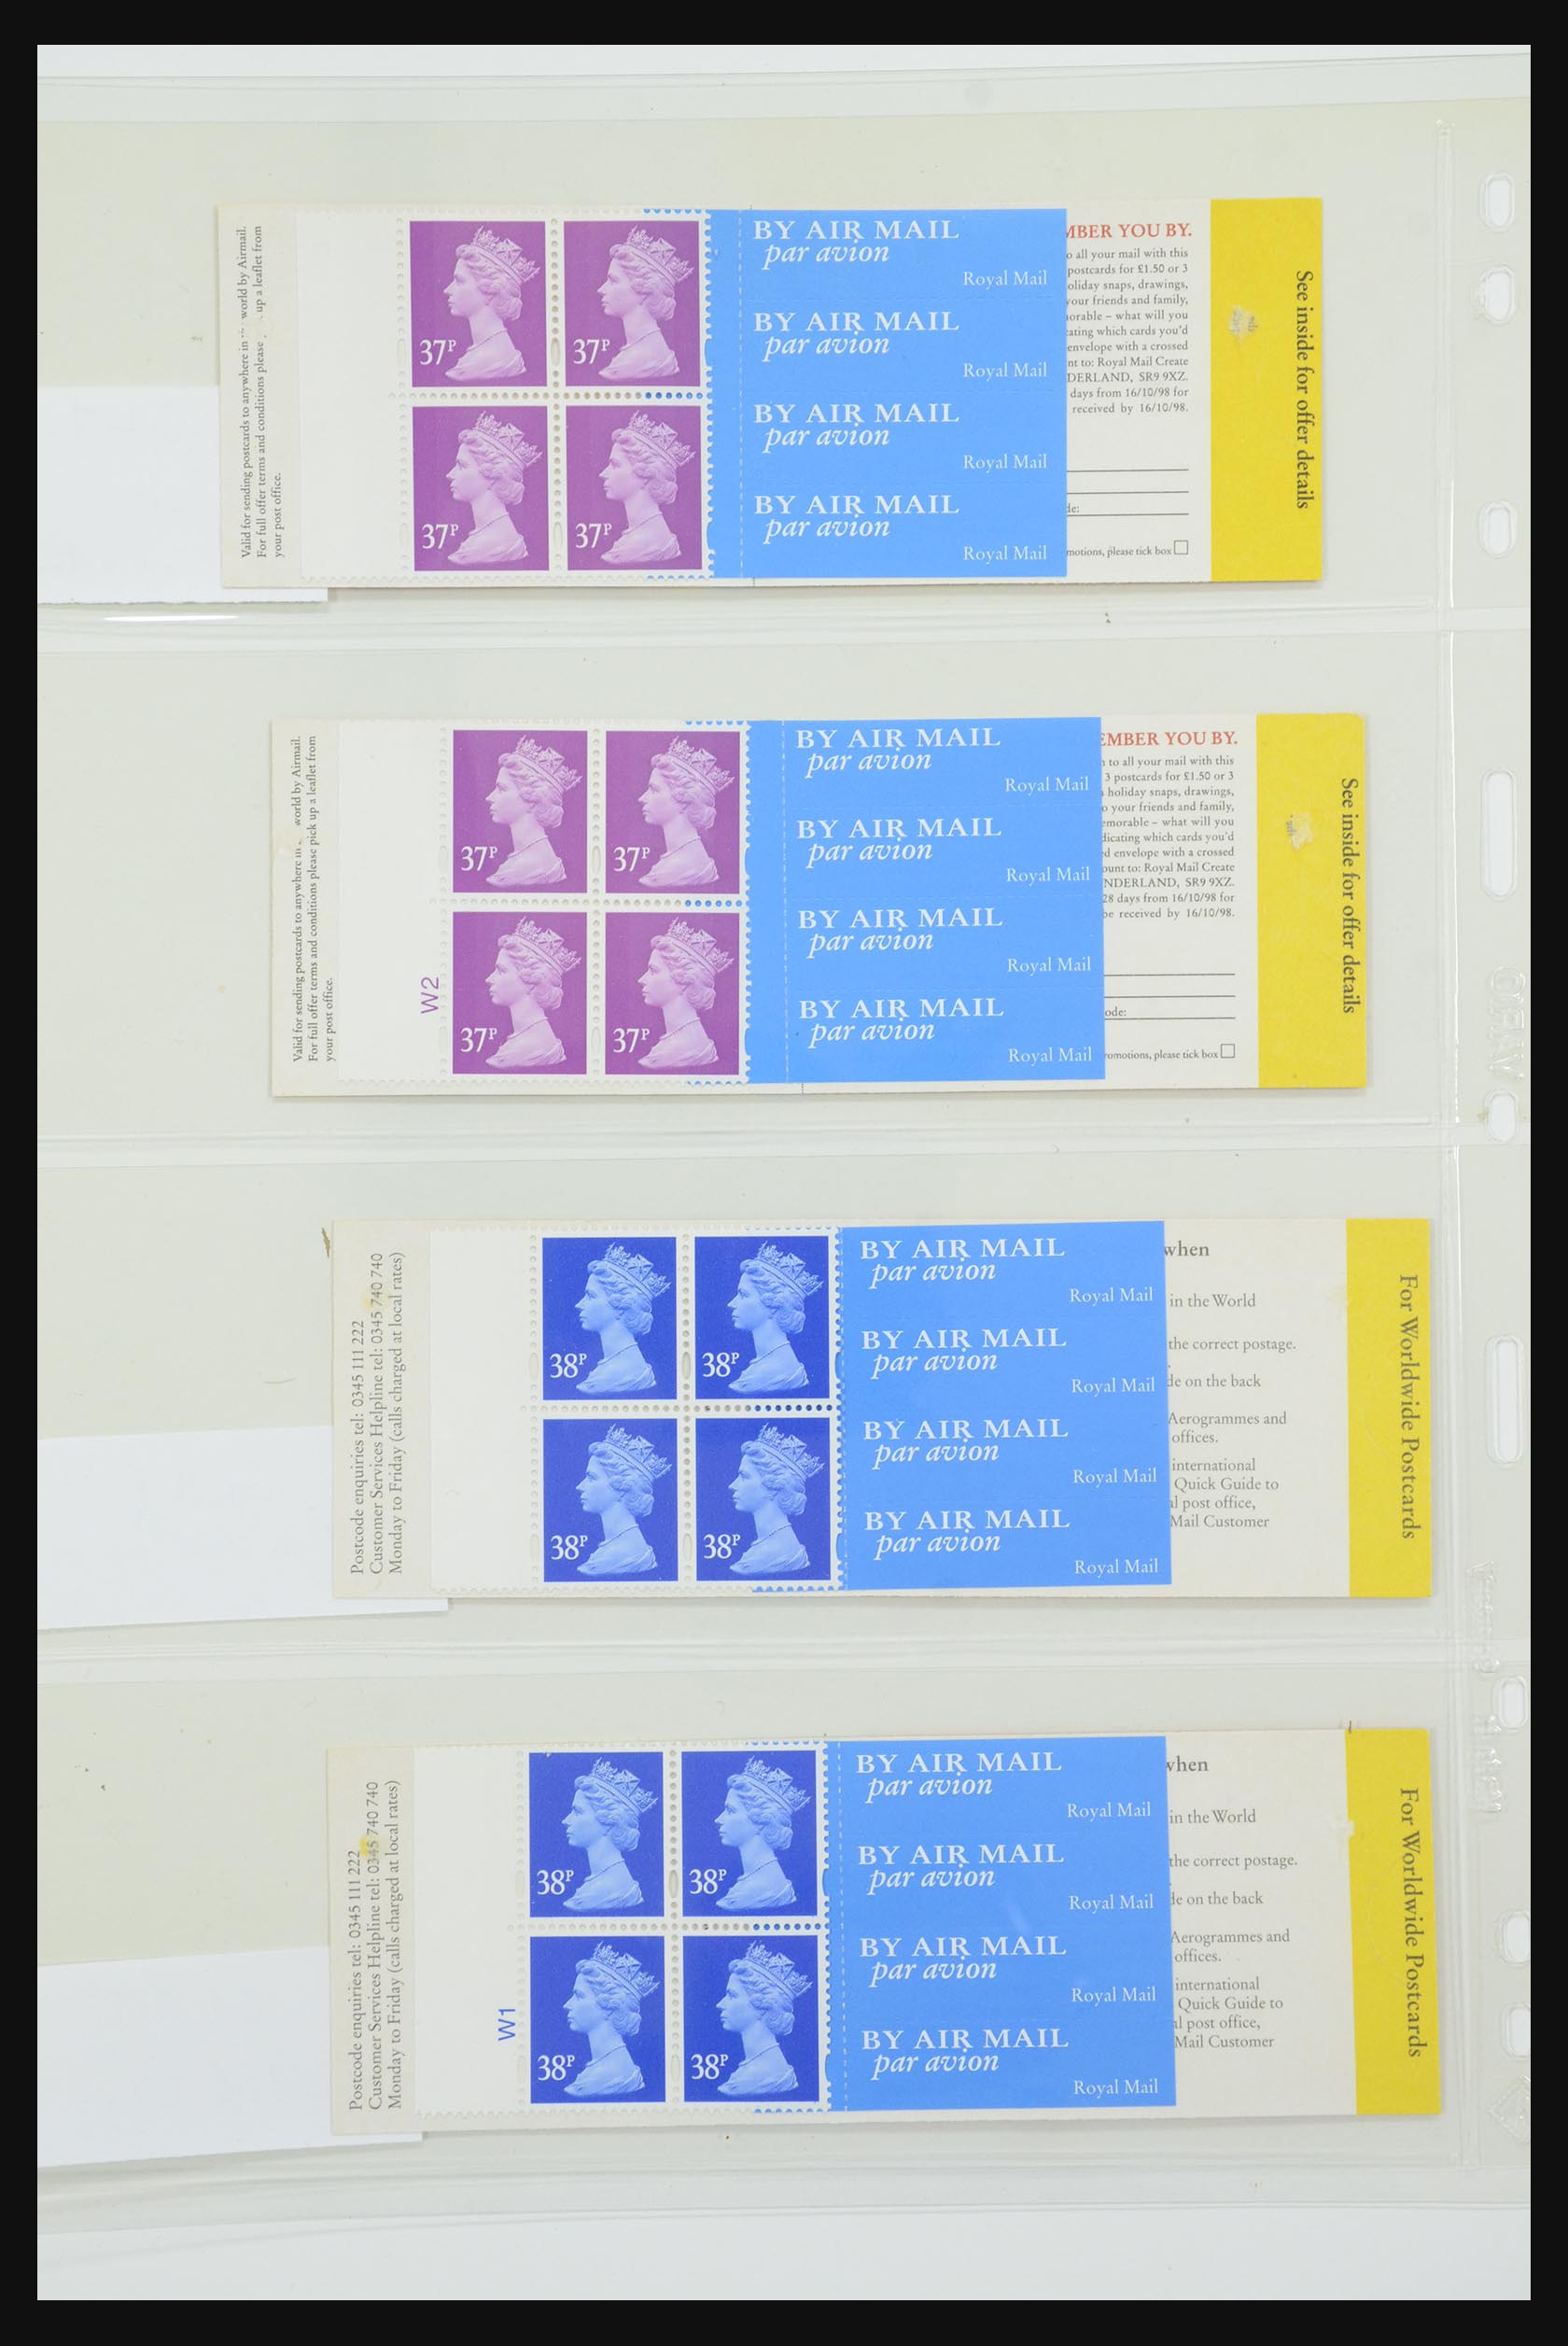 31959 058 - 31959 Engeland postzegelboekjes 1987-2016!!